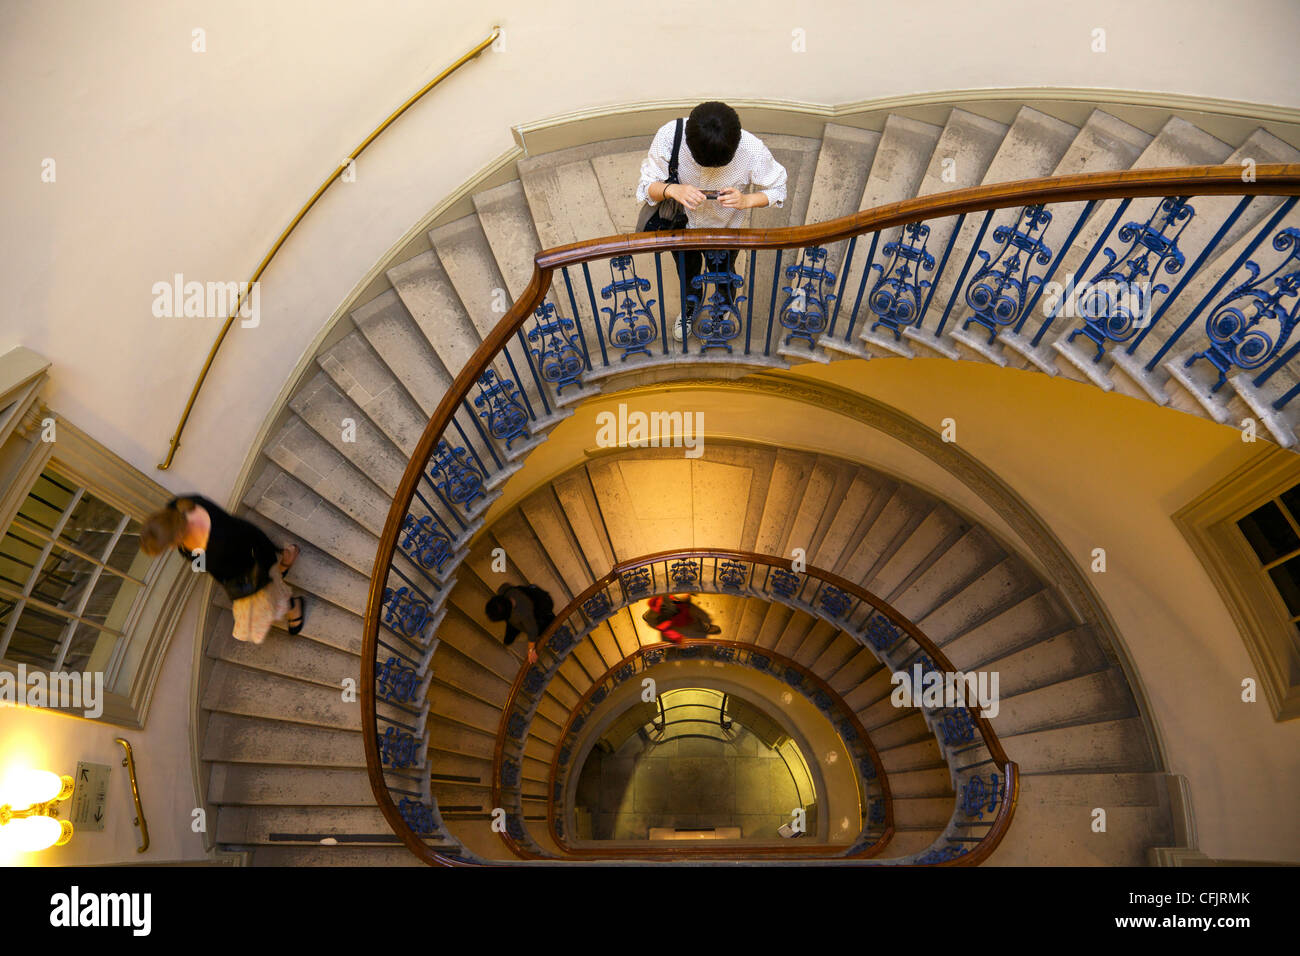 Visiteurs sur escalier circulaire, Courtauld Galeries, Somerset House, Londres, Angleterre, Royaume-Uni, Europe Banque D'Images